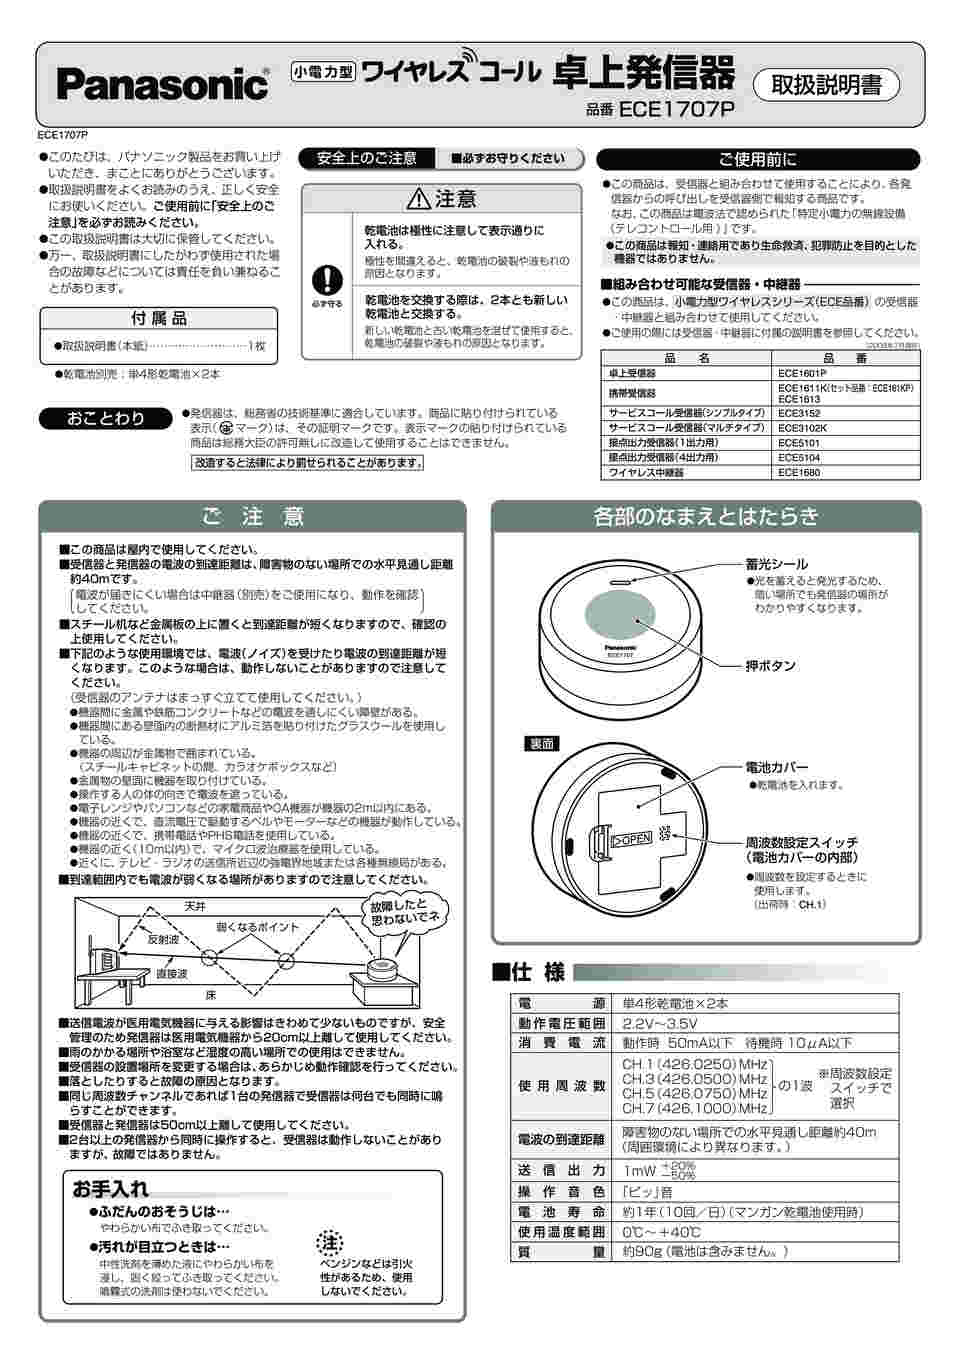 Panasonic サービスコール受信器(固定表示タイプ) ECE3152 - 1